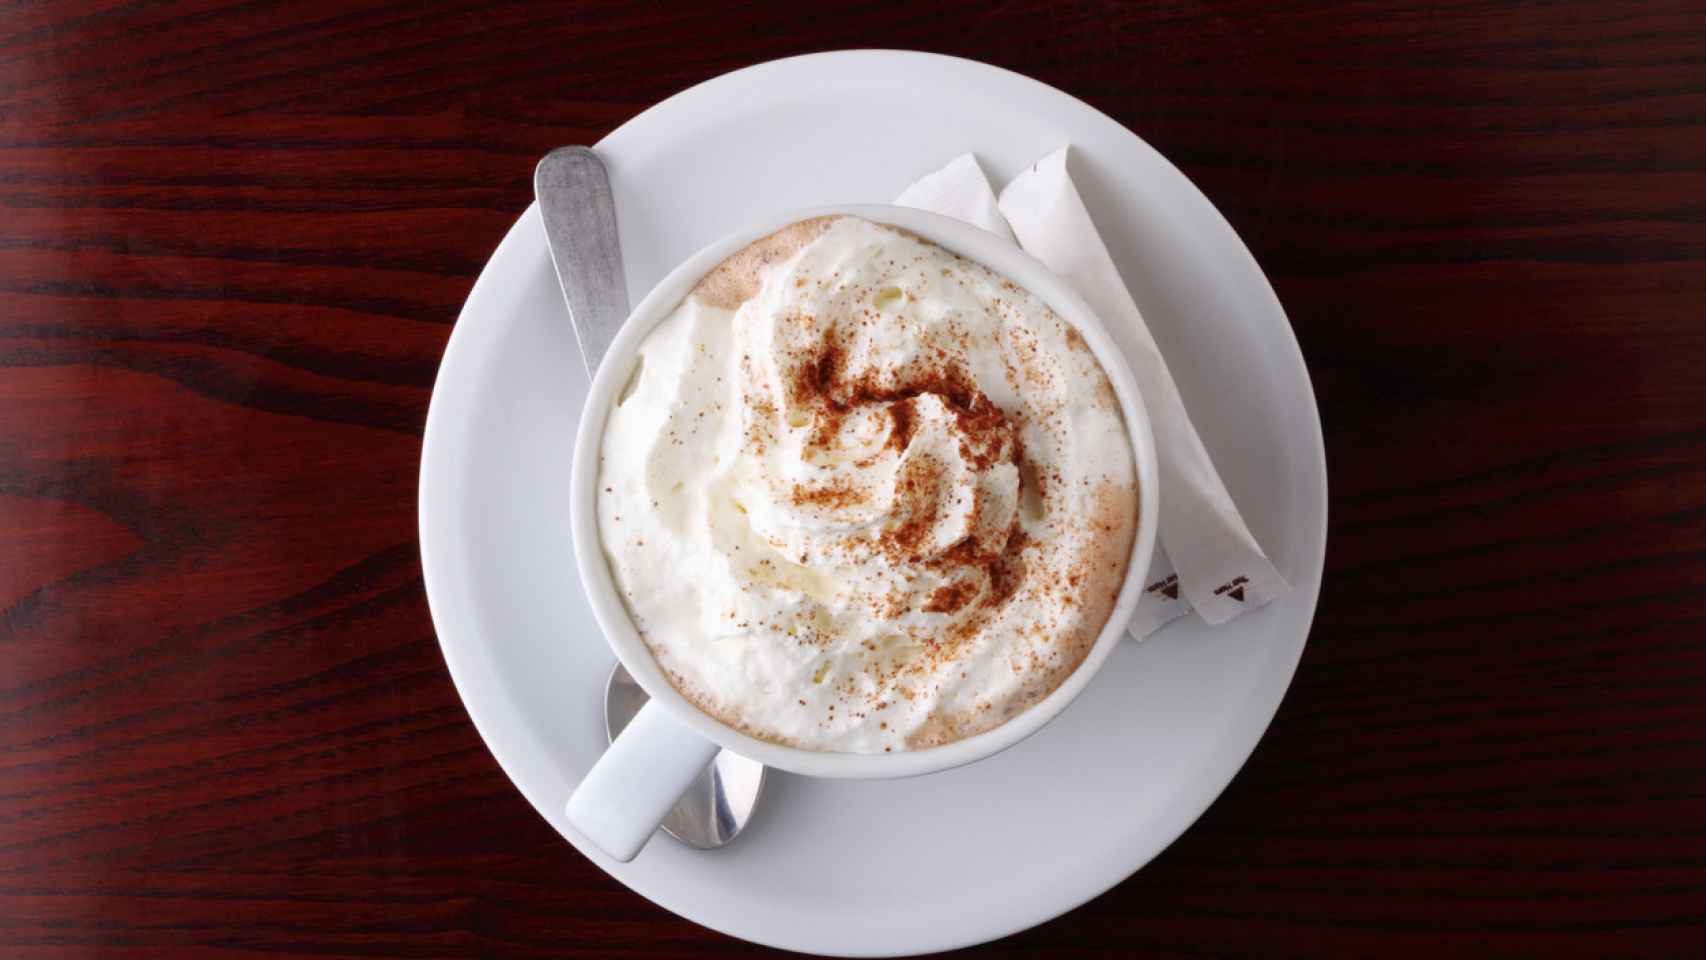 La crema batida en el café puede favorecer la ganancia de peso.